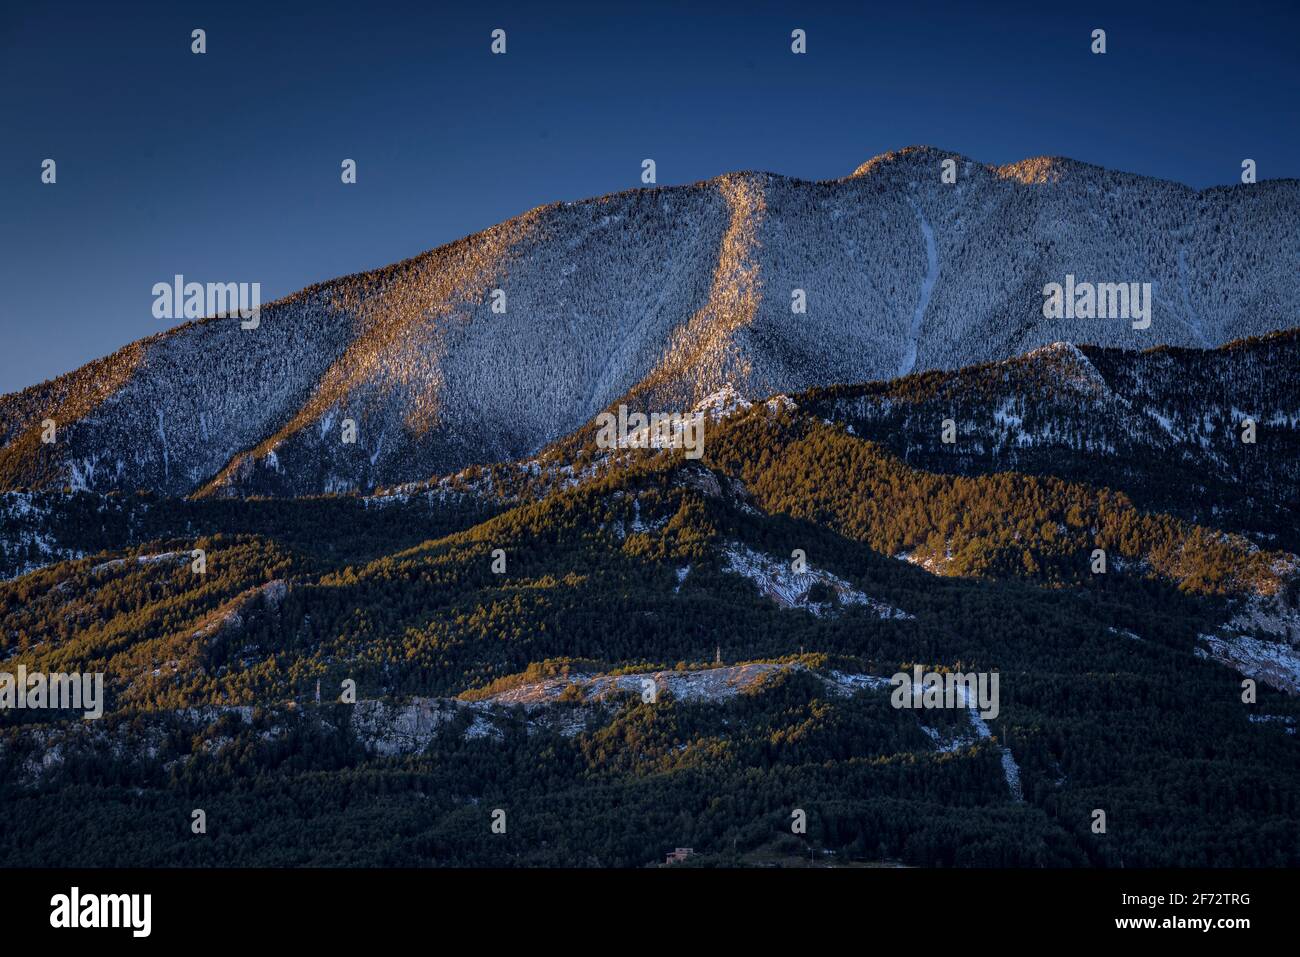 La catena Serra d'Ensija in autunno si inneverà dopo una nevicata. Visto dal punto di vista di Mirador Albert Arilla, vicino a Gisclareny (Barcellona, Catalogna, Spagna) Foto Stock